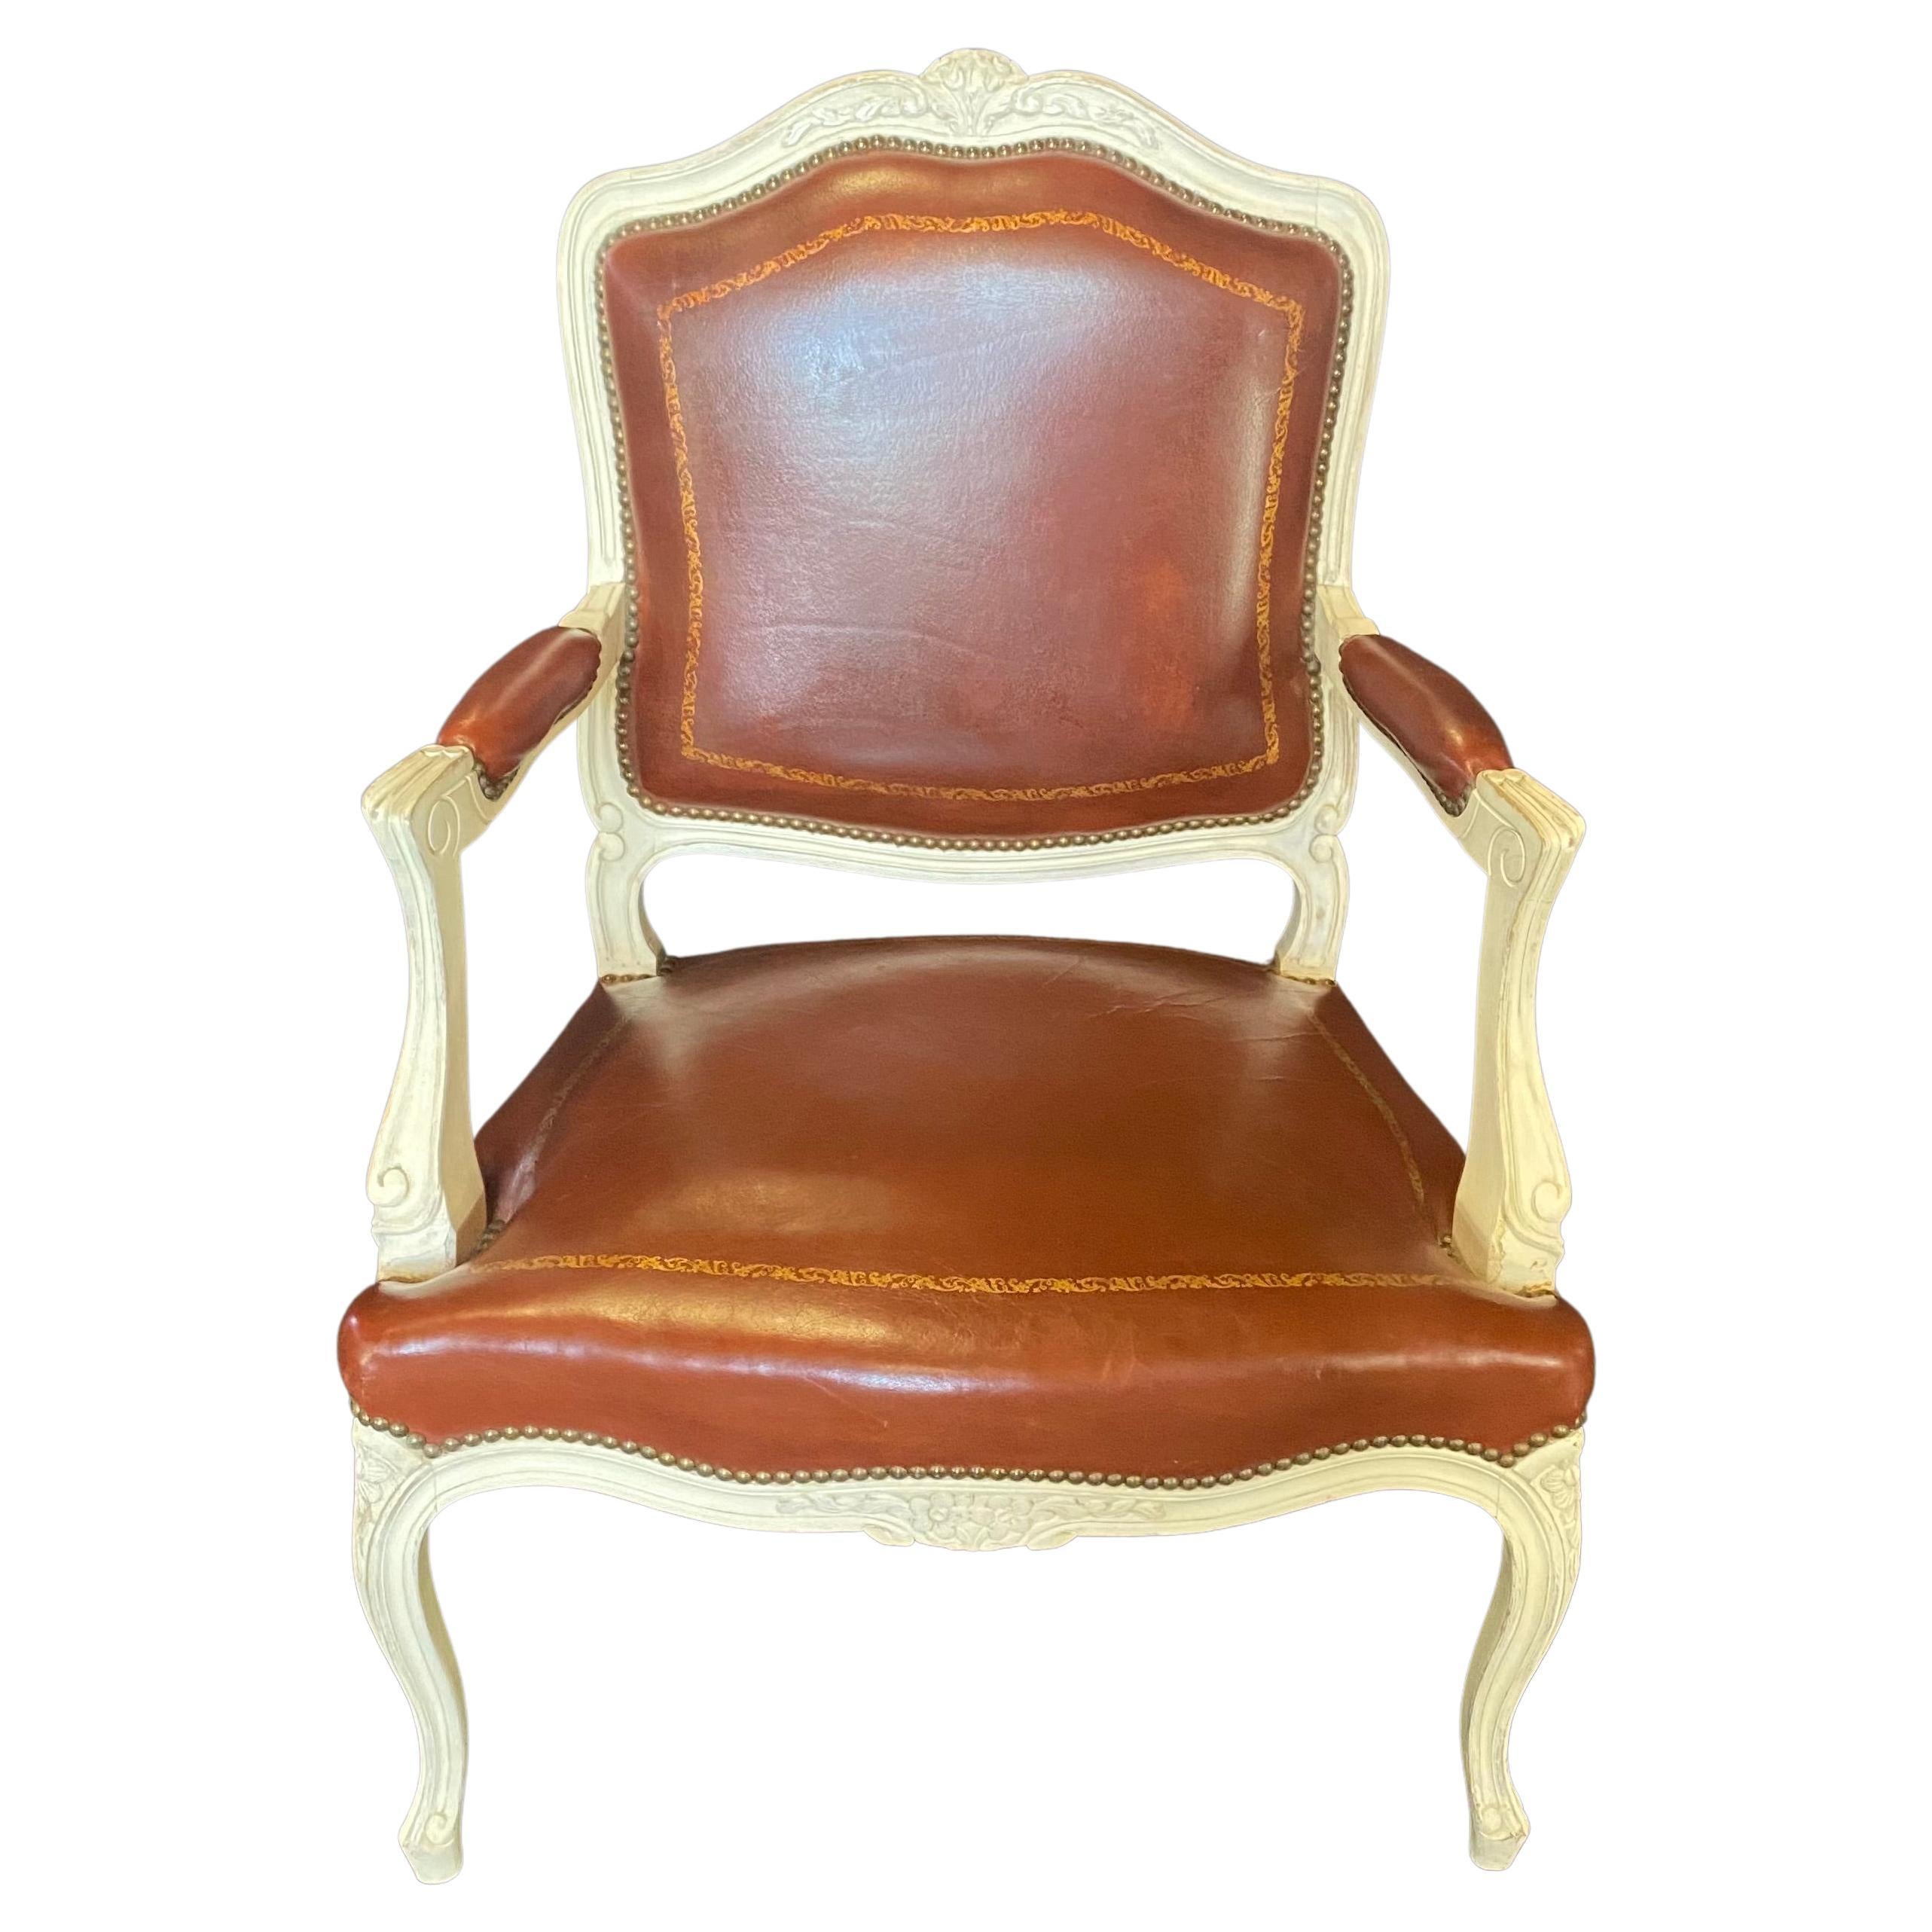 Üppiges Paar ledergeprägter Sessel oder Fauteuils. Sie können als elegante Esszimmerstühle am Kopfende eines Tisches oder als Sessel im Wohn- oder Arbeitszimmer verwendet werden. Elfenbeinfarbenes, geschnitztes Nussbaumholz bildet einen schönen